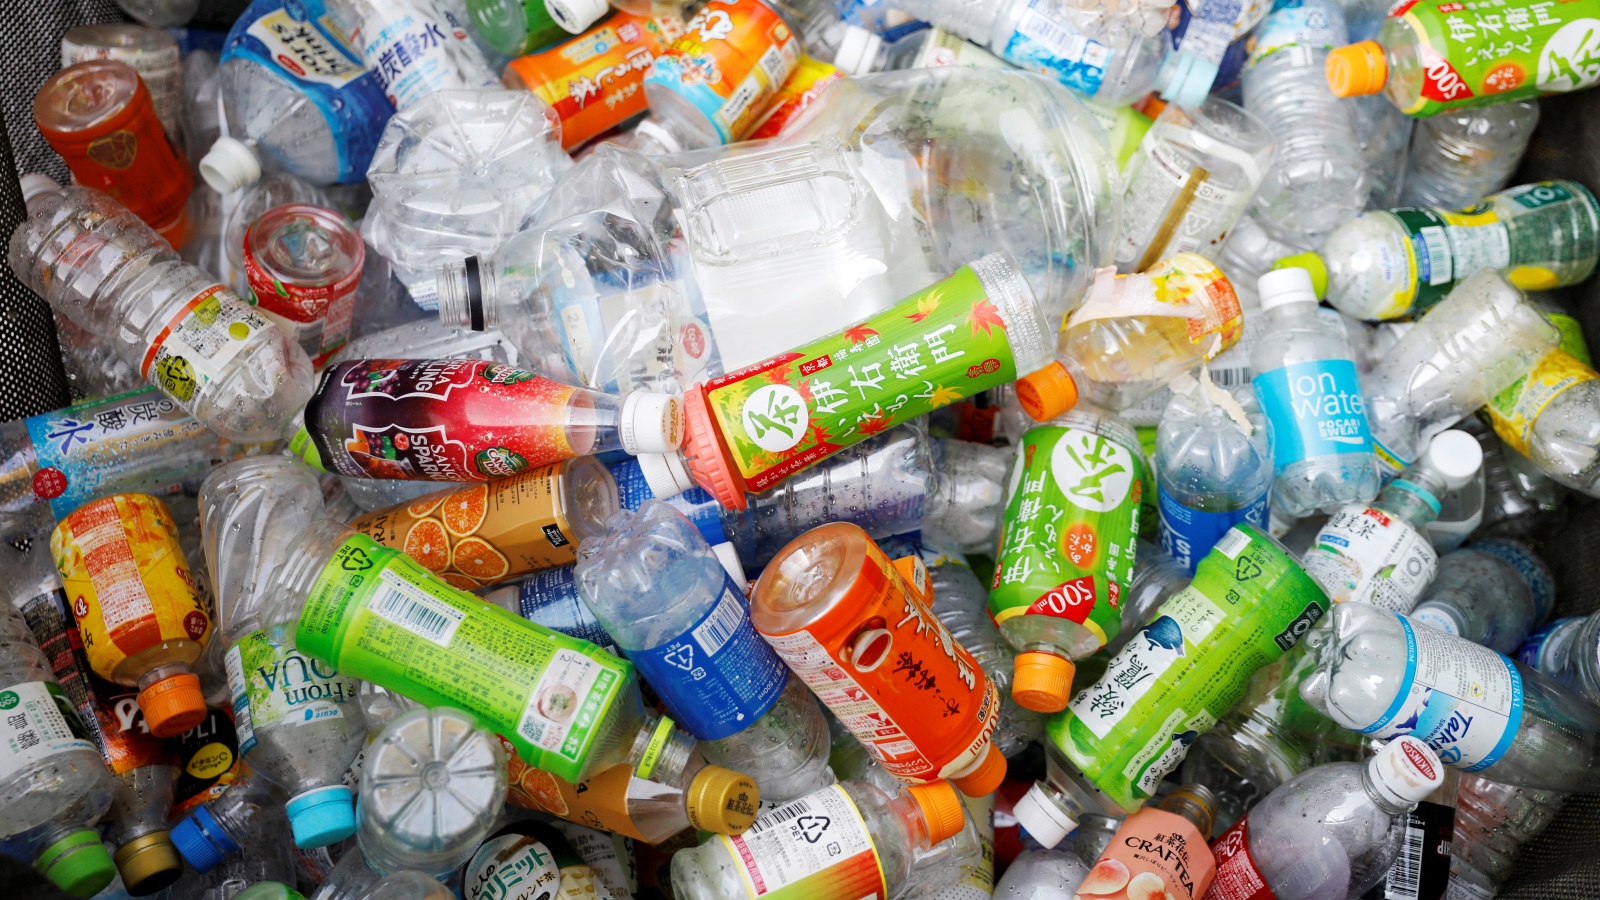 المنتجات البلاستيكية تحتوي على مواد غير قابلة للتحلل (رويترز)